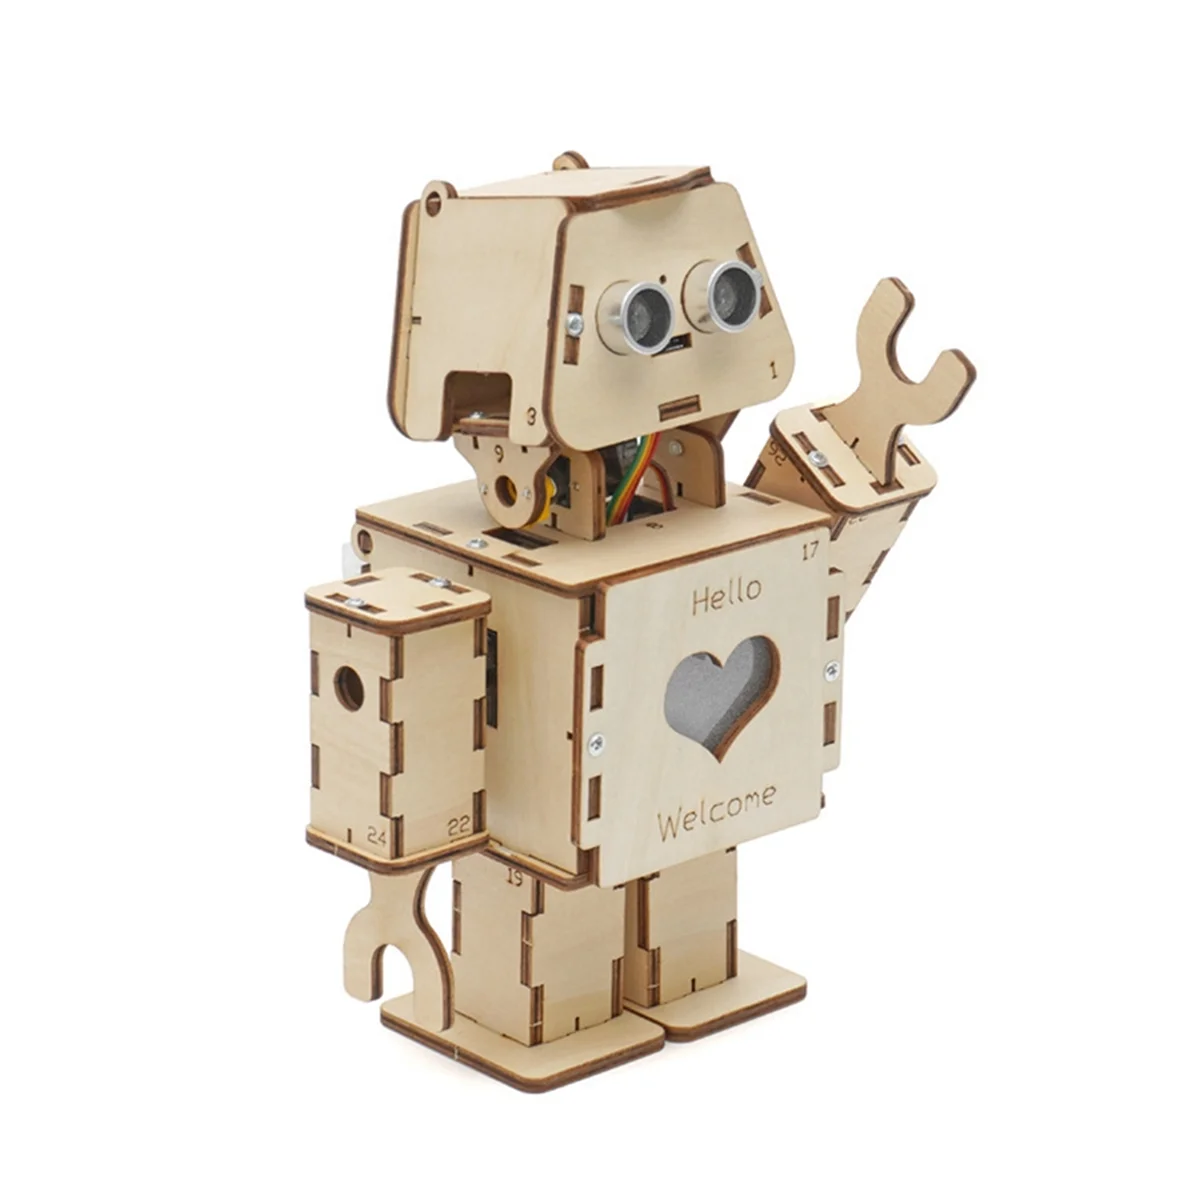 

Программируемый двойной Интеллектуальный программируемый интерактивный робот в комплекте «сделай сам», научная версия, молодежная модель для образования пара